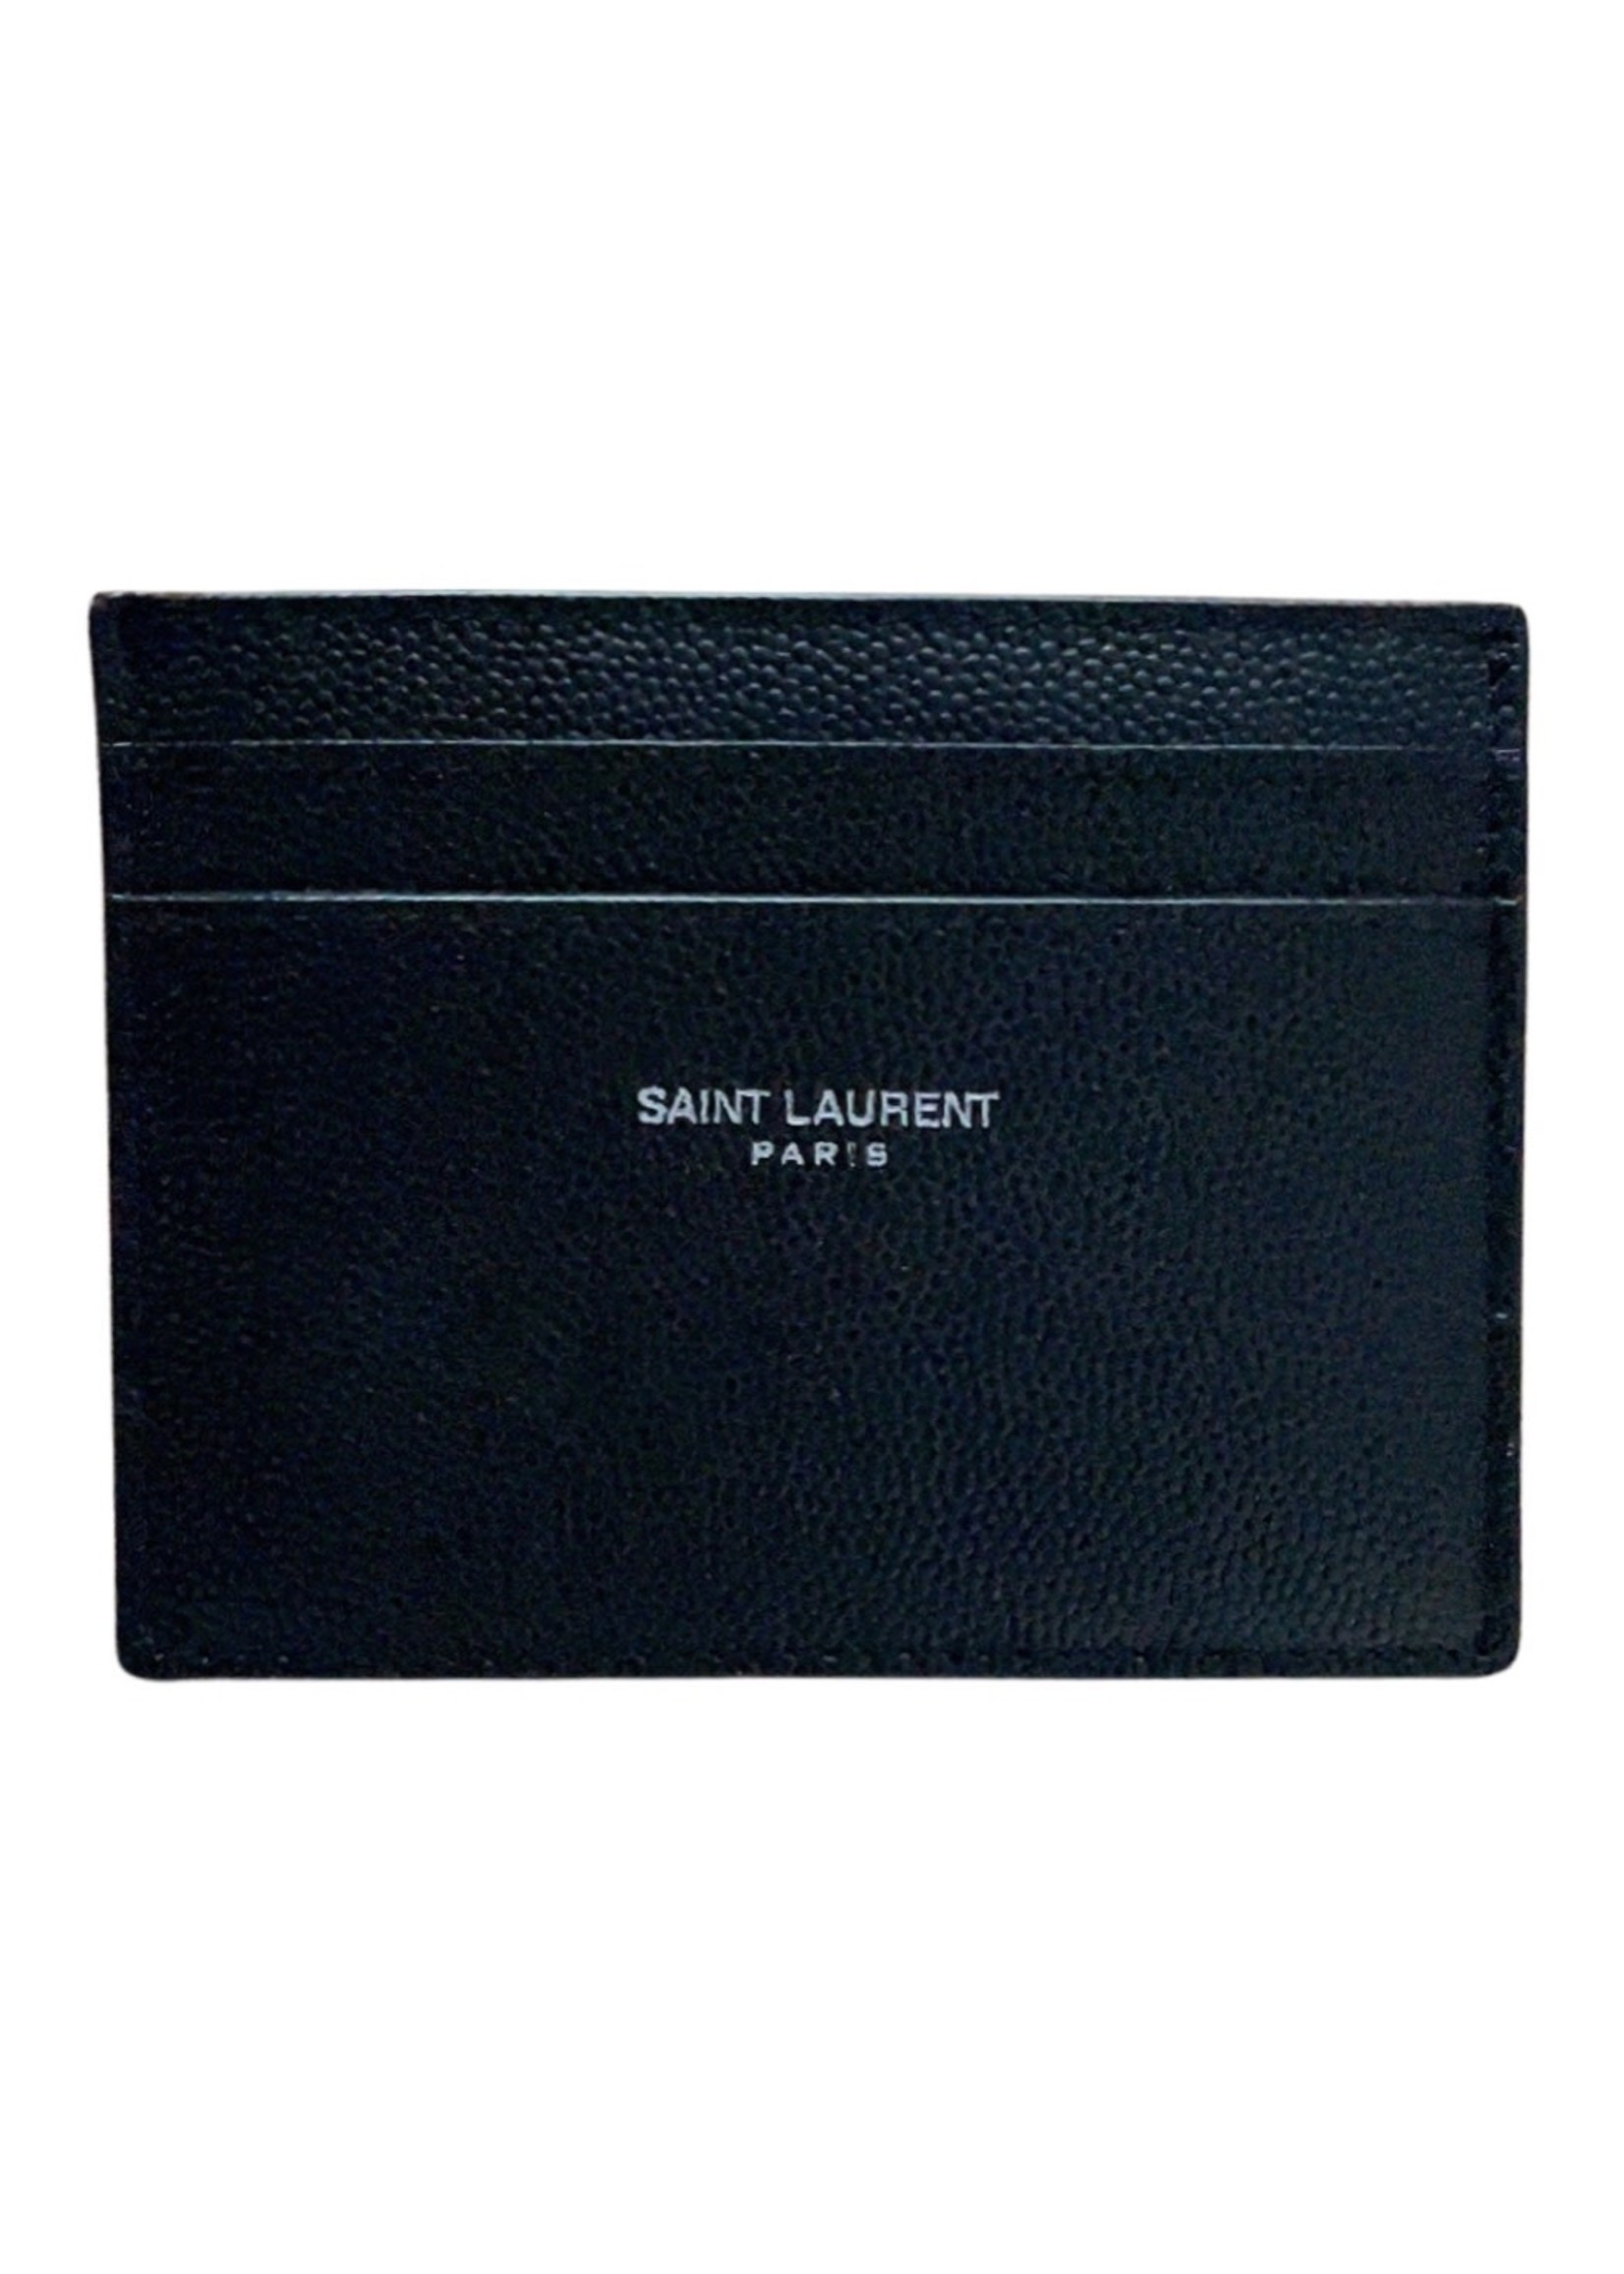 SAINT LAURENT CREDIT CARD CASE